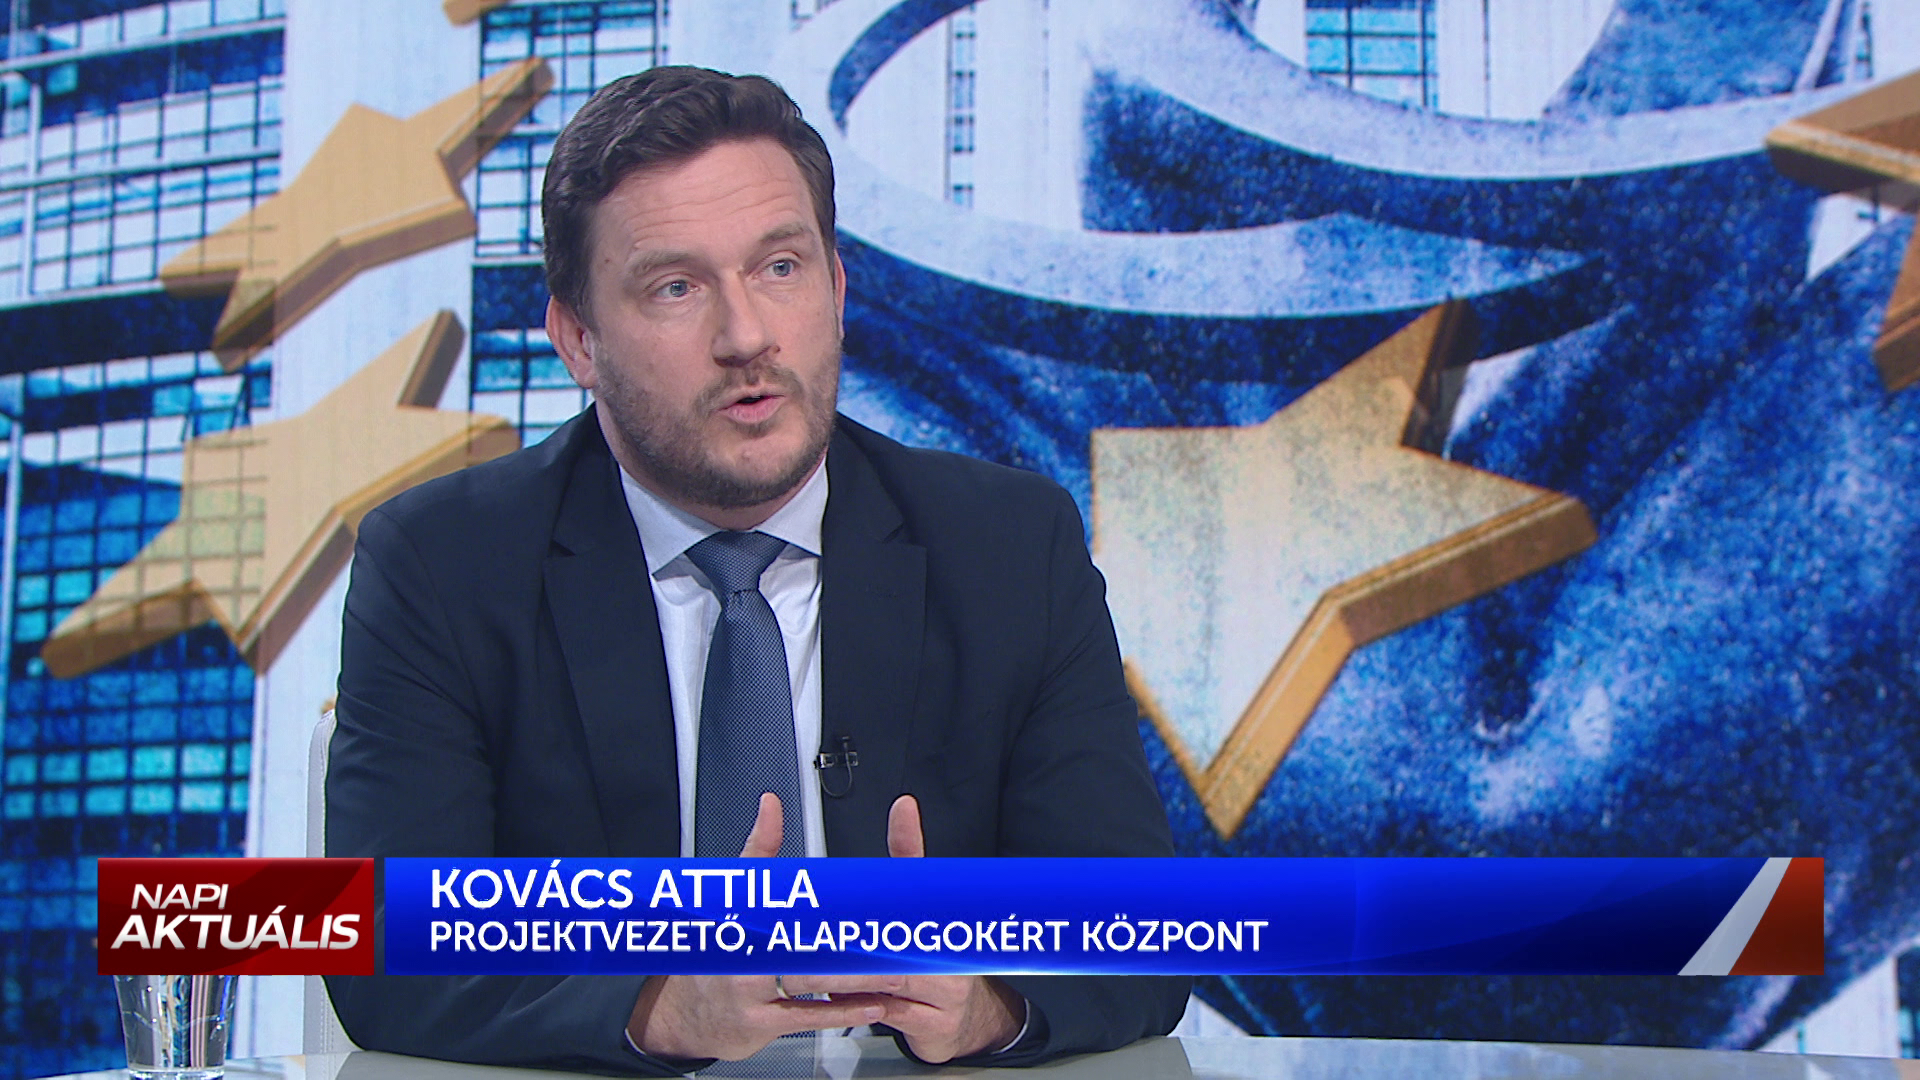 Kovács Attila: Magyarország nem az Európai Egyesült Államokban érdekelt, hanem erős nemzetállamok szövetségében